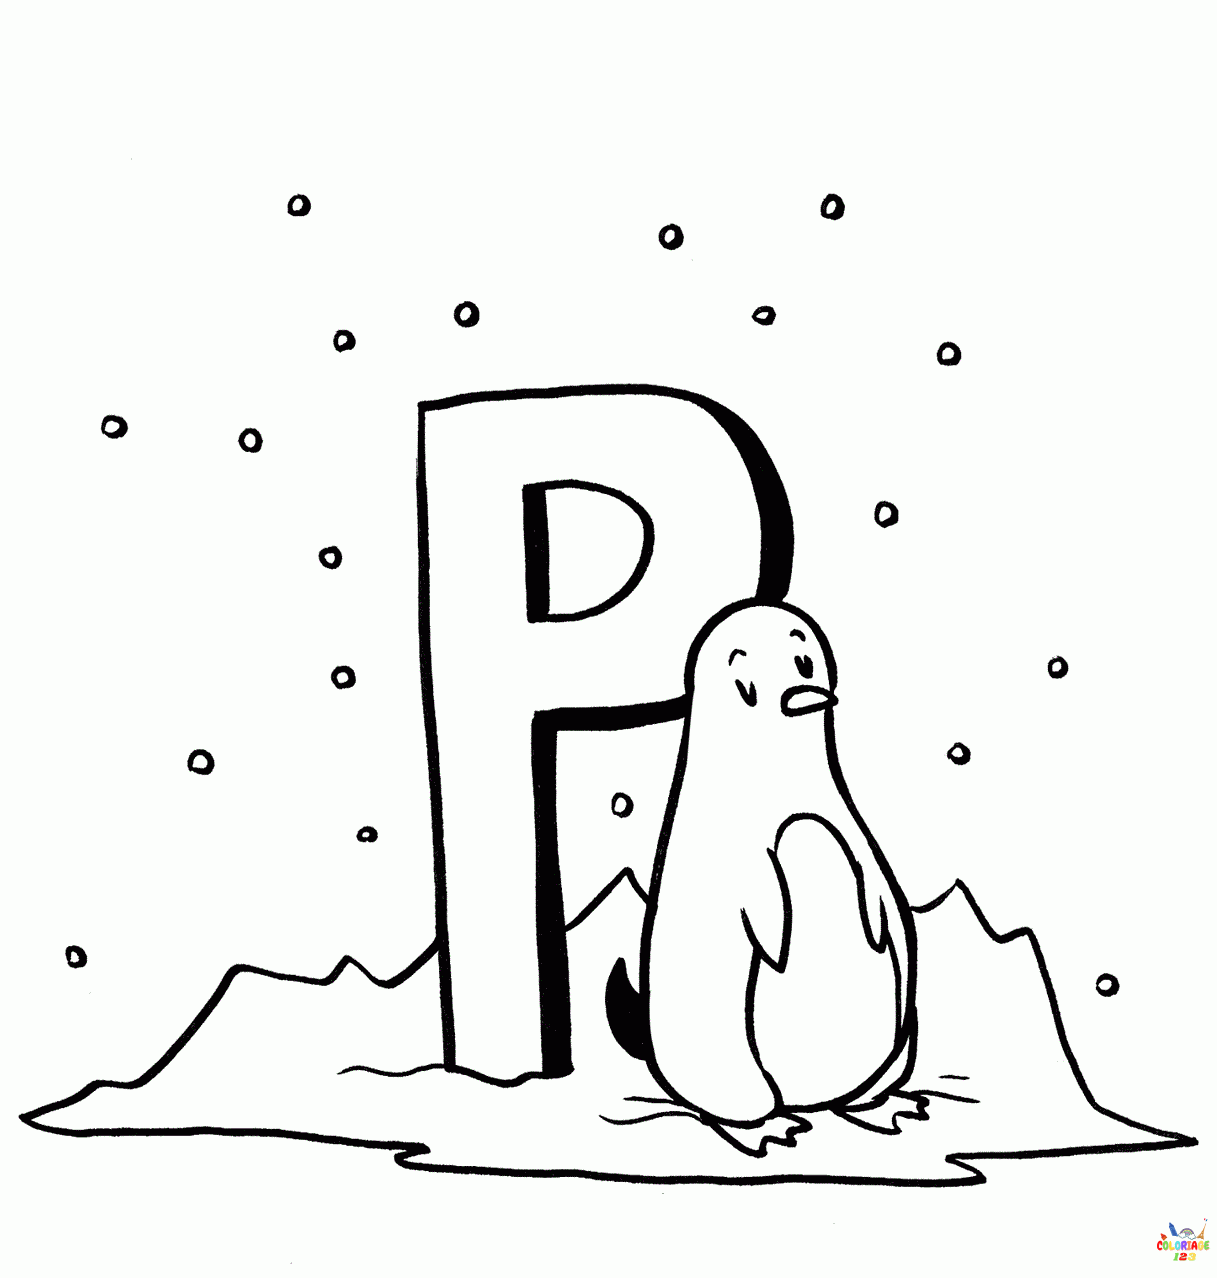 Pingouin (4)